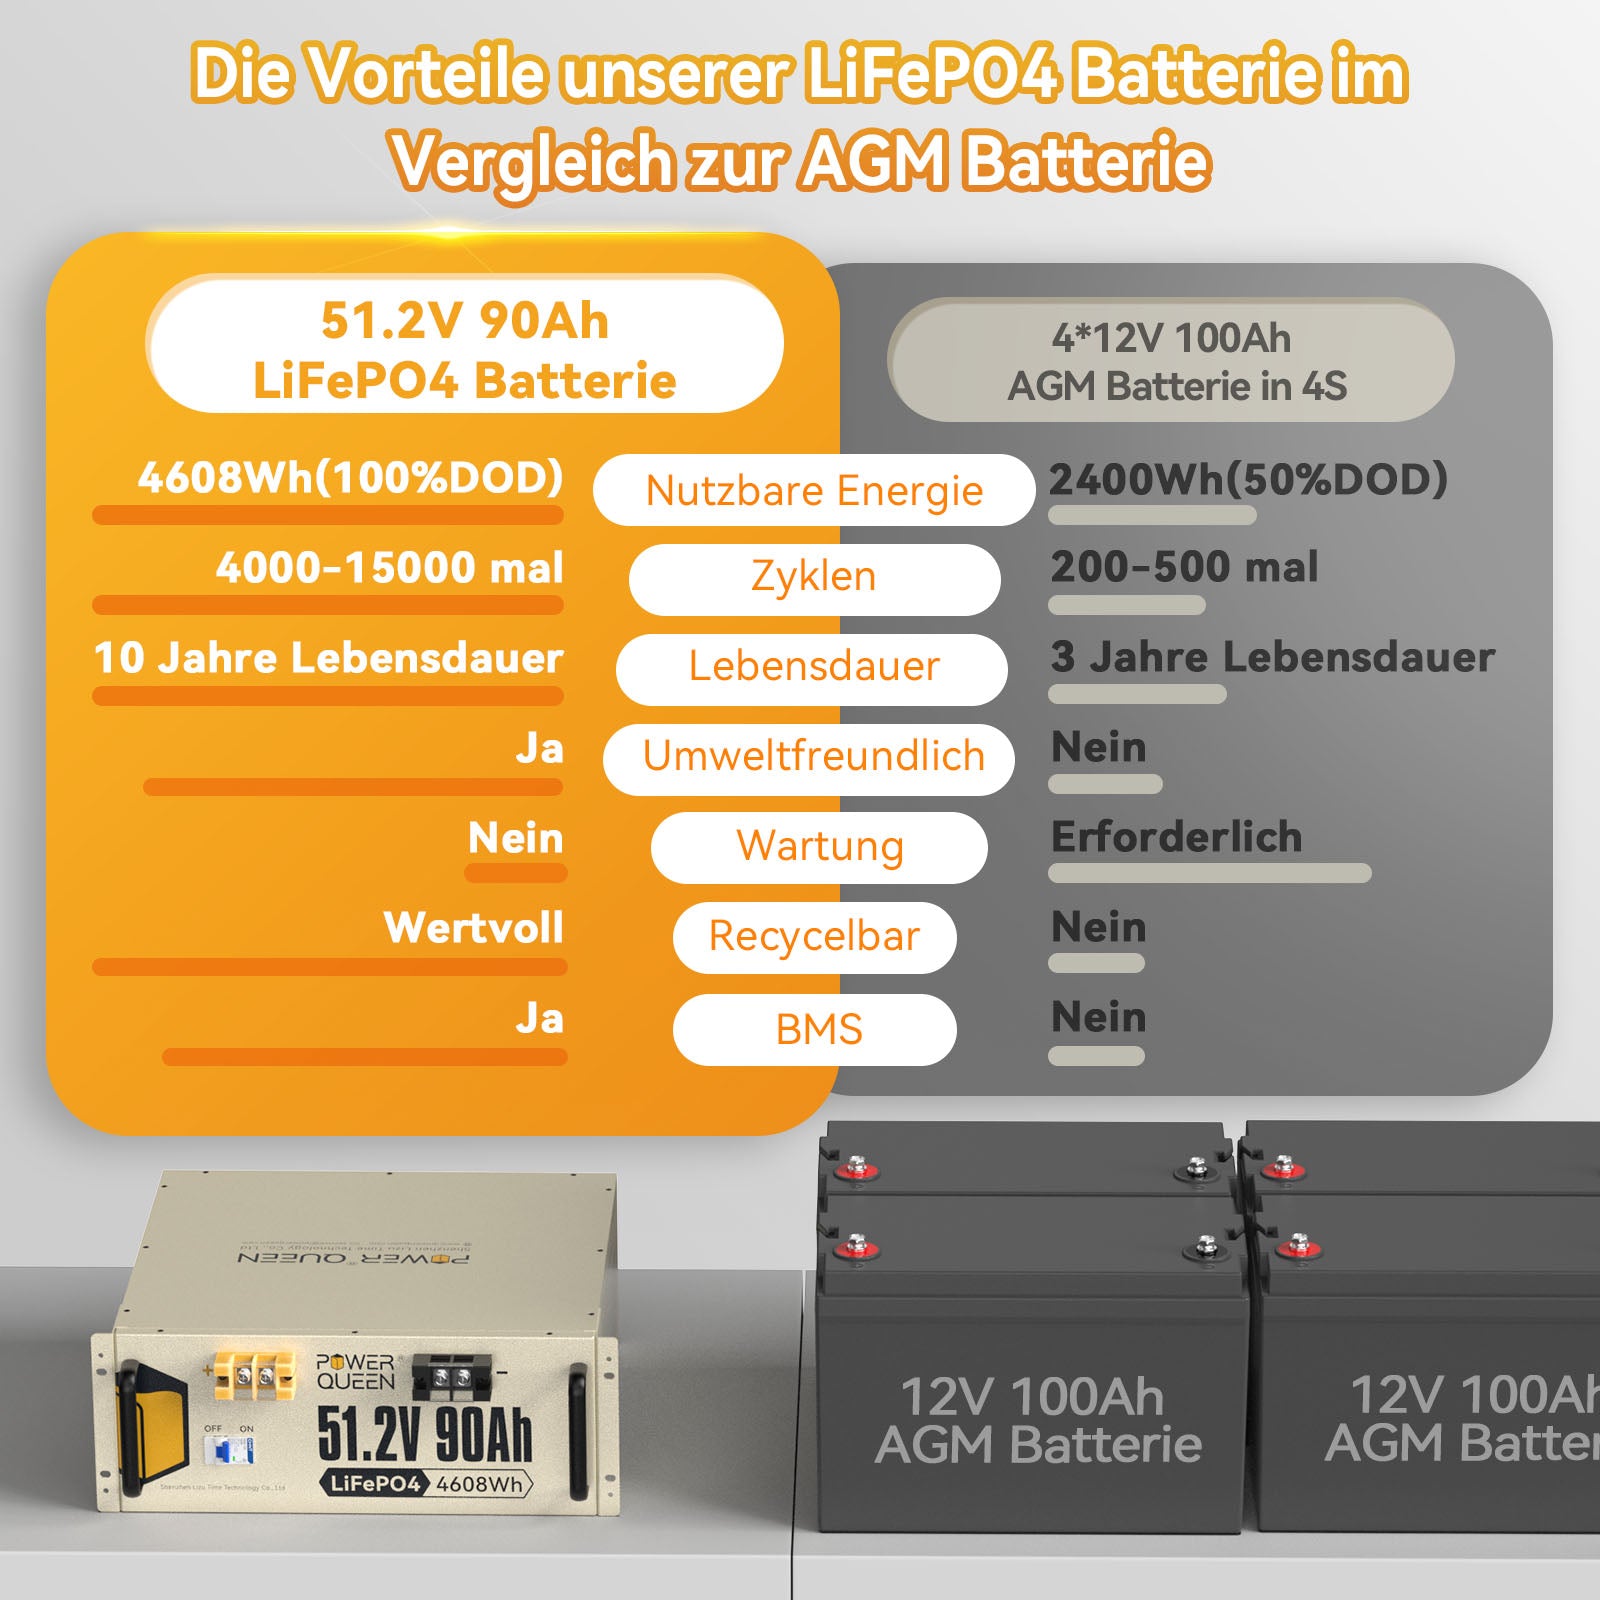 【0% VAT】Power Queen 51.2V 90Ah LiFePO4 battery, Built-in 90A BMS